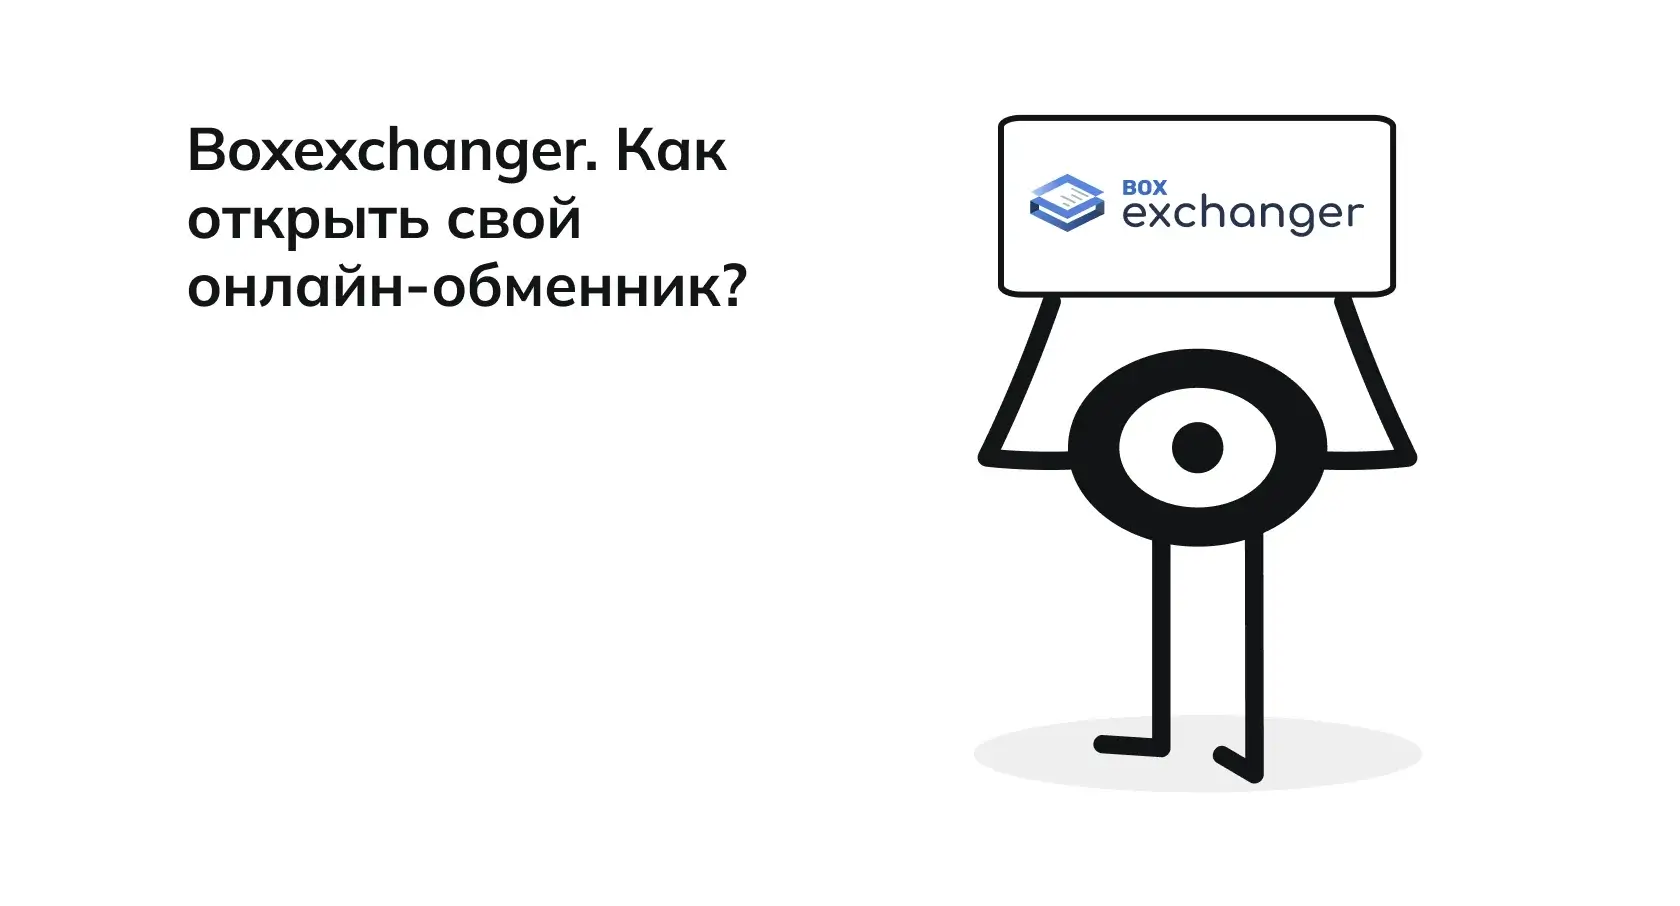 BoxExchanger: Как открыть свой собственный онлайн-обменник?